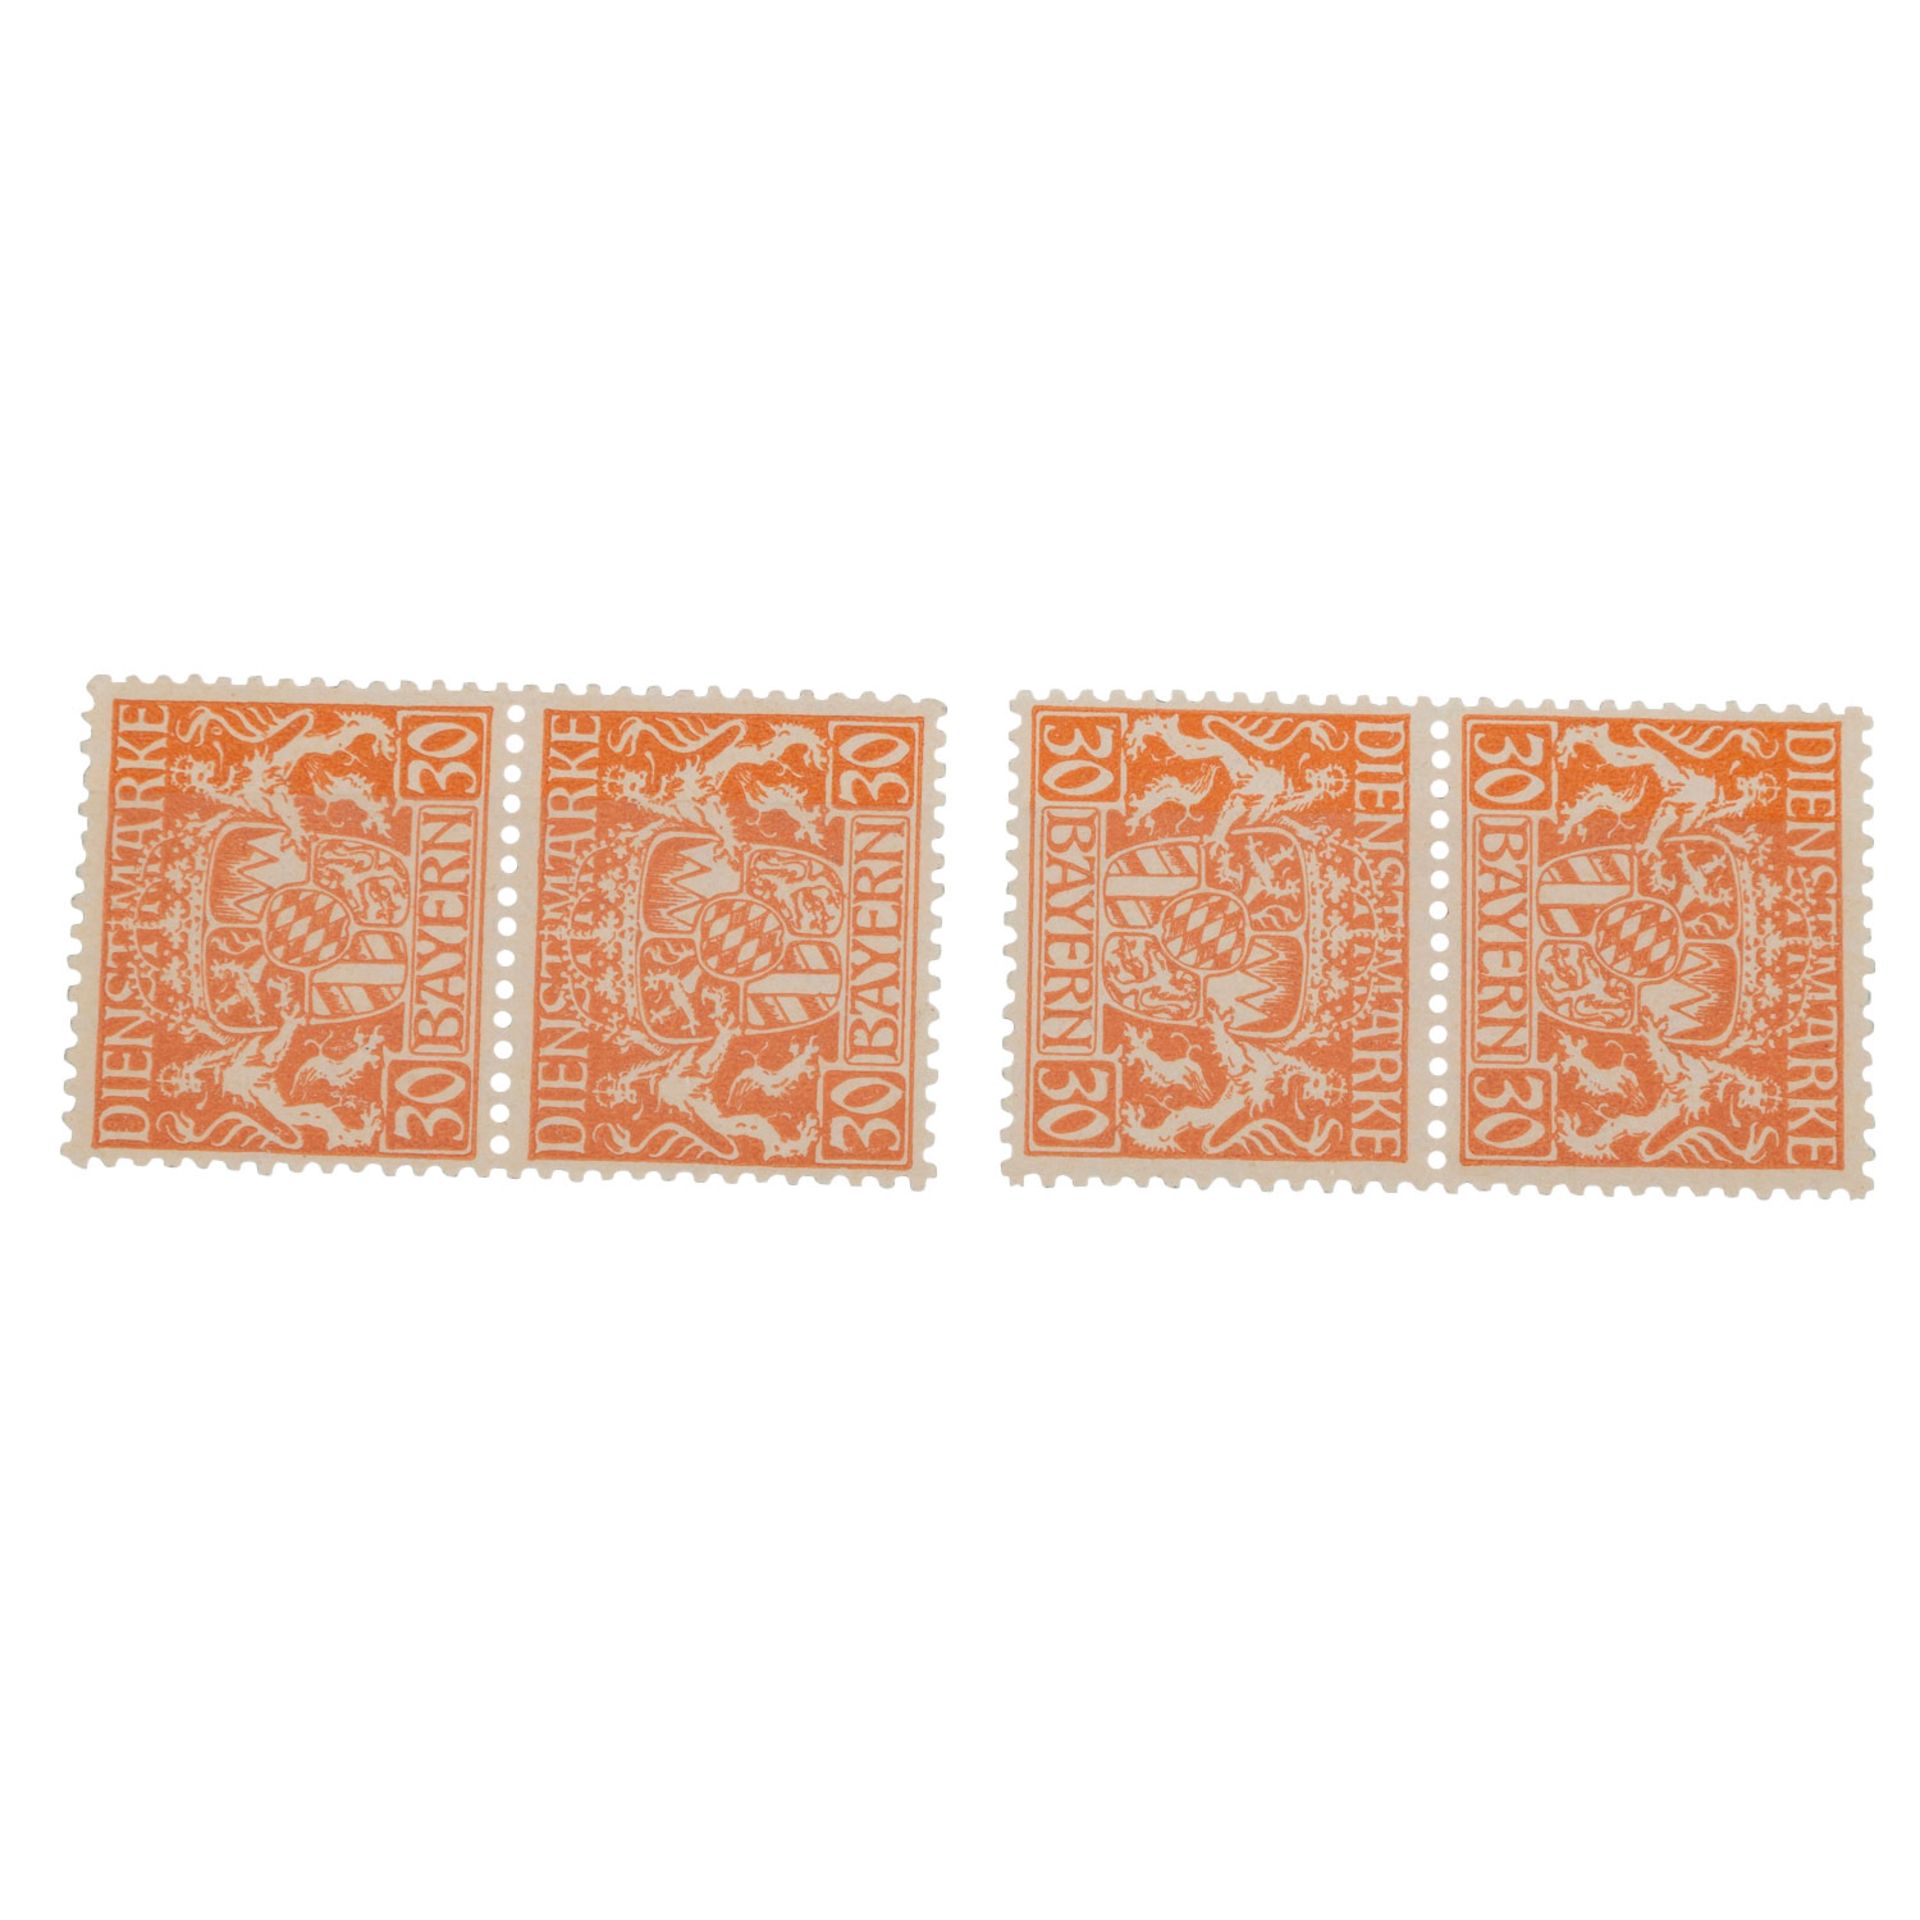 Bayern Dienstmarken 1916/17,4 x Michel Nr. d22w (Friedensdruck), postfrisch in zwei senkrechten